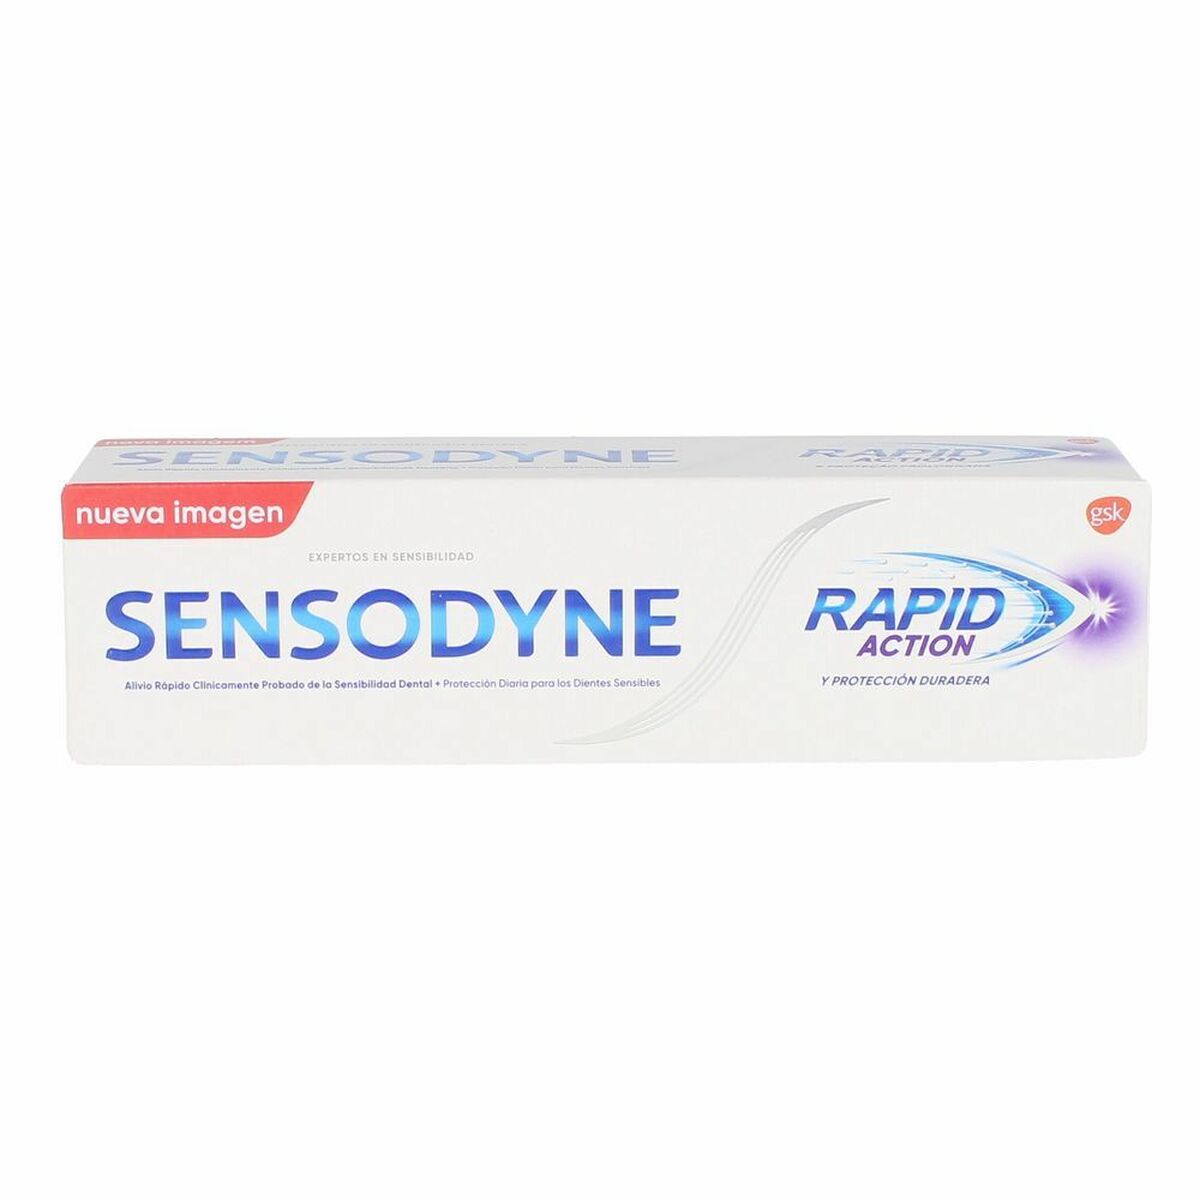 Сензодин на паста за зъби (75 ml)